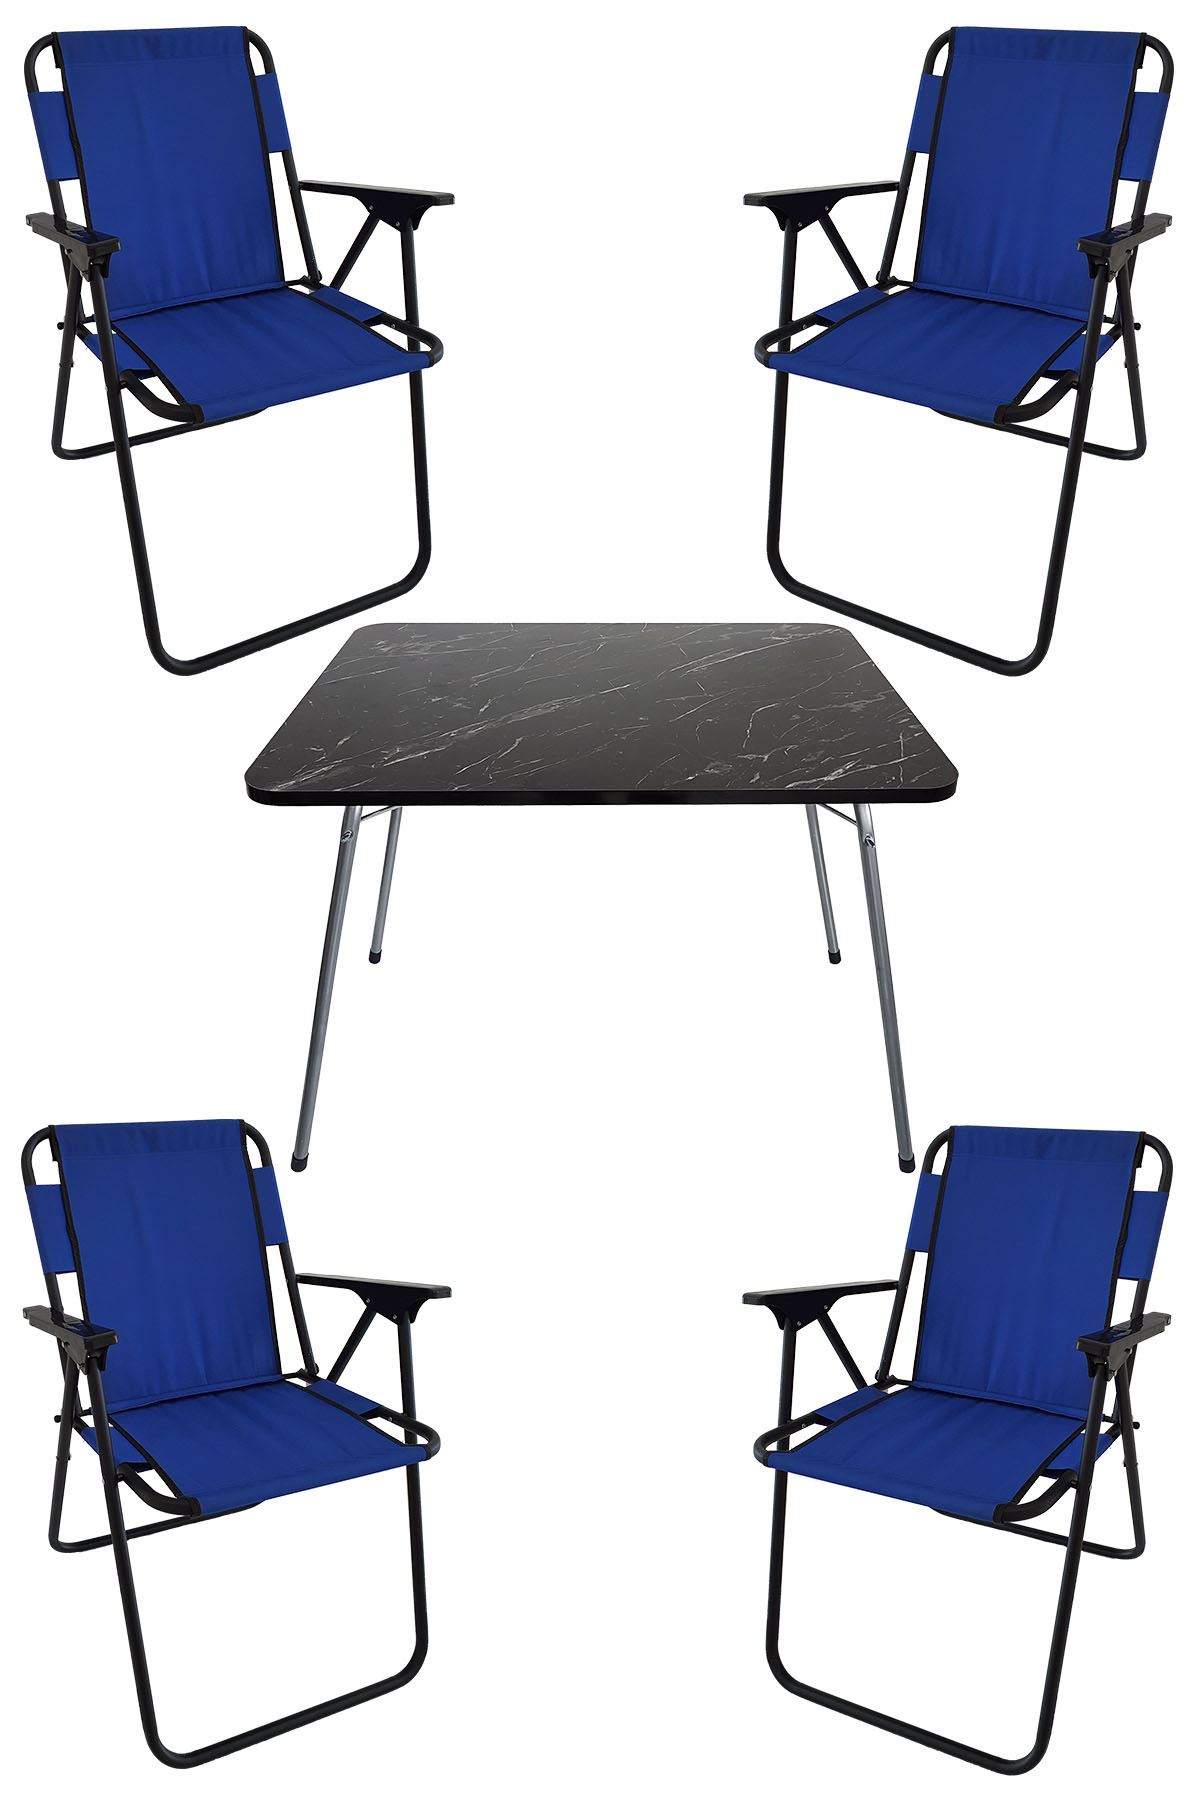 Bofigo 60X80 Granit Desenli Katlanır Masa + 4 Adet Katlanır Sandalye Kamp Seti Bahçe Takımı Mavi